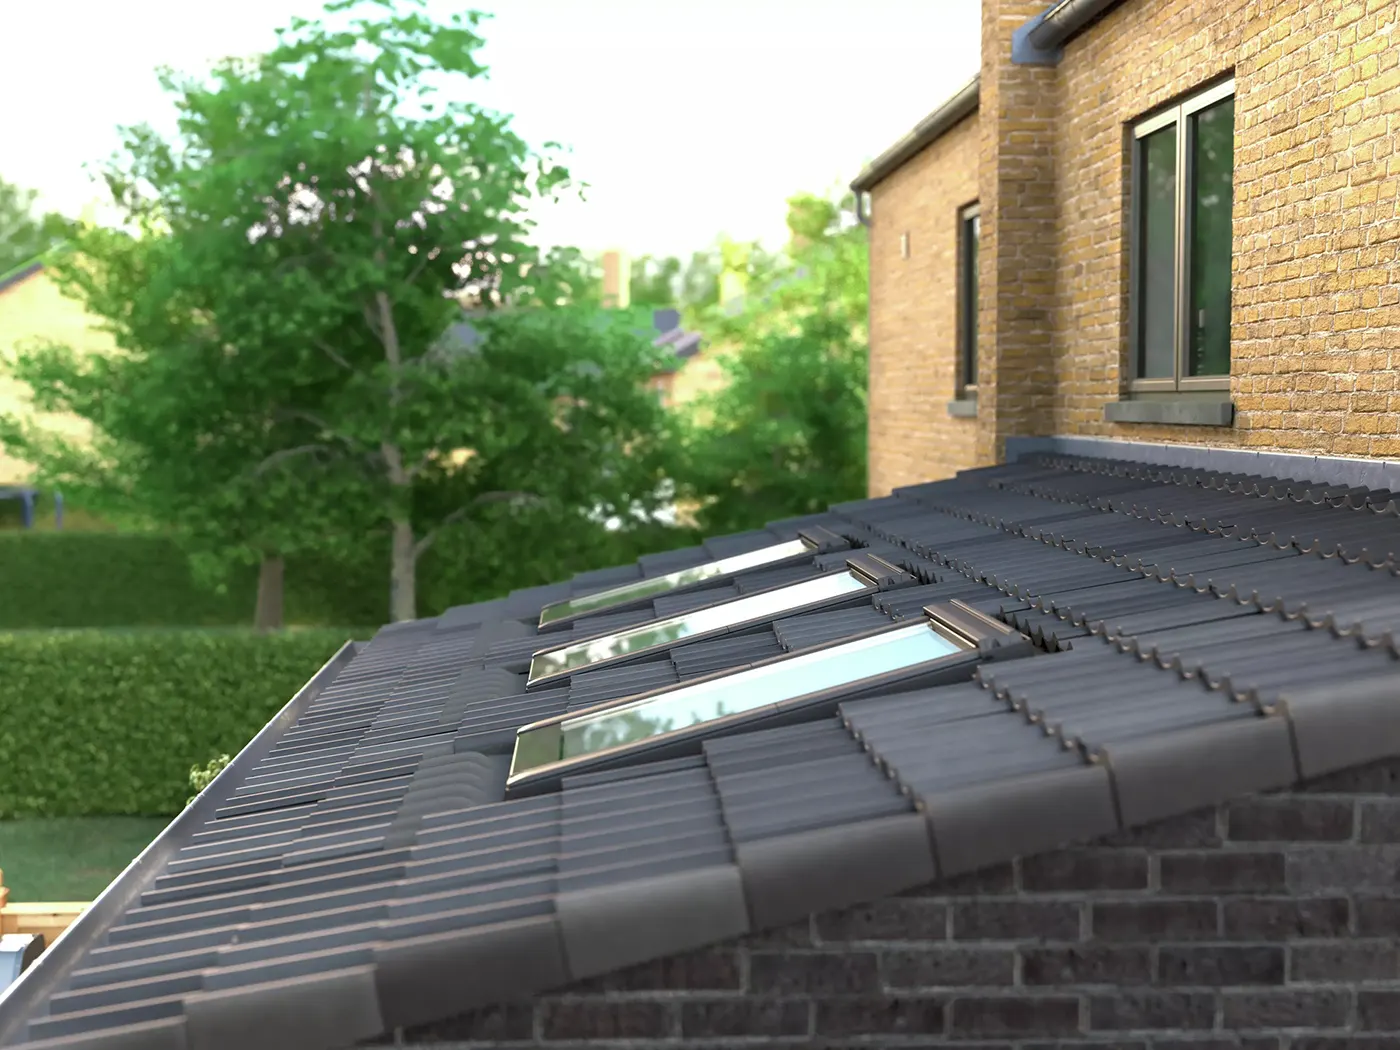 okna do niskiego kąta nachylenia dachu GBL od Velux width=